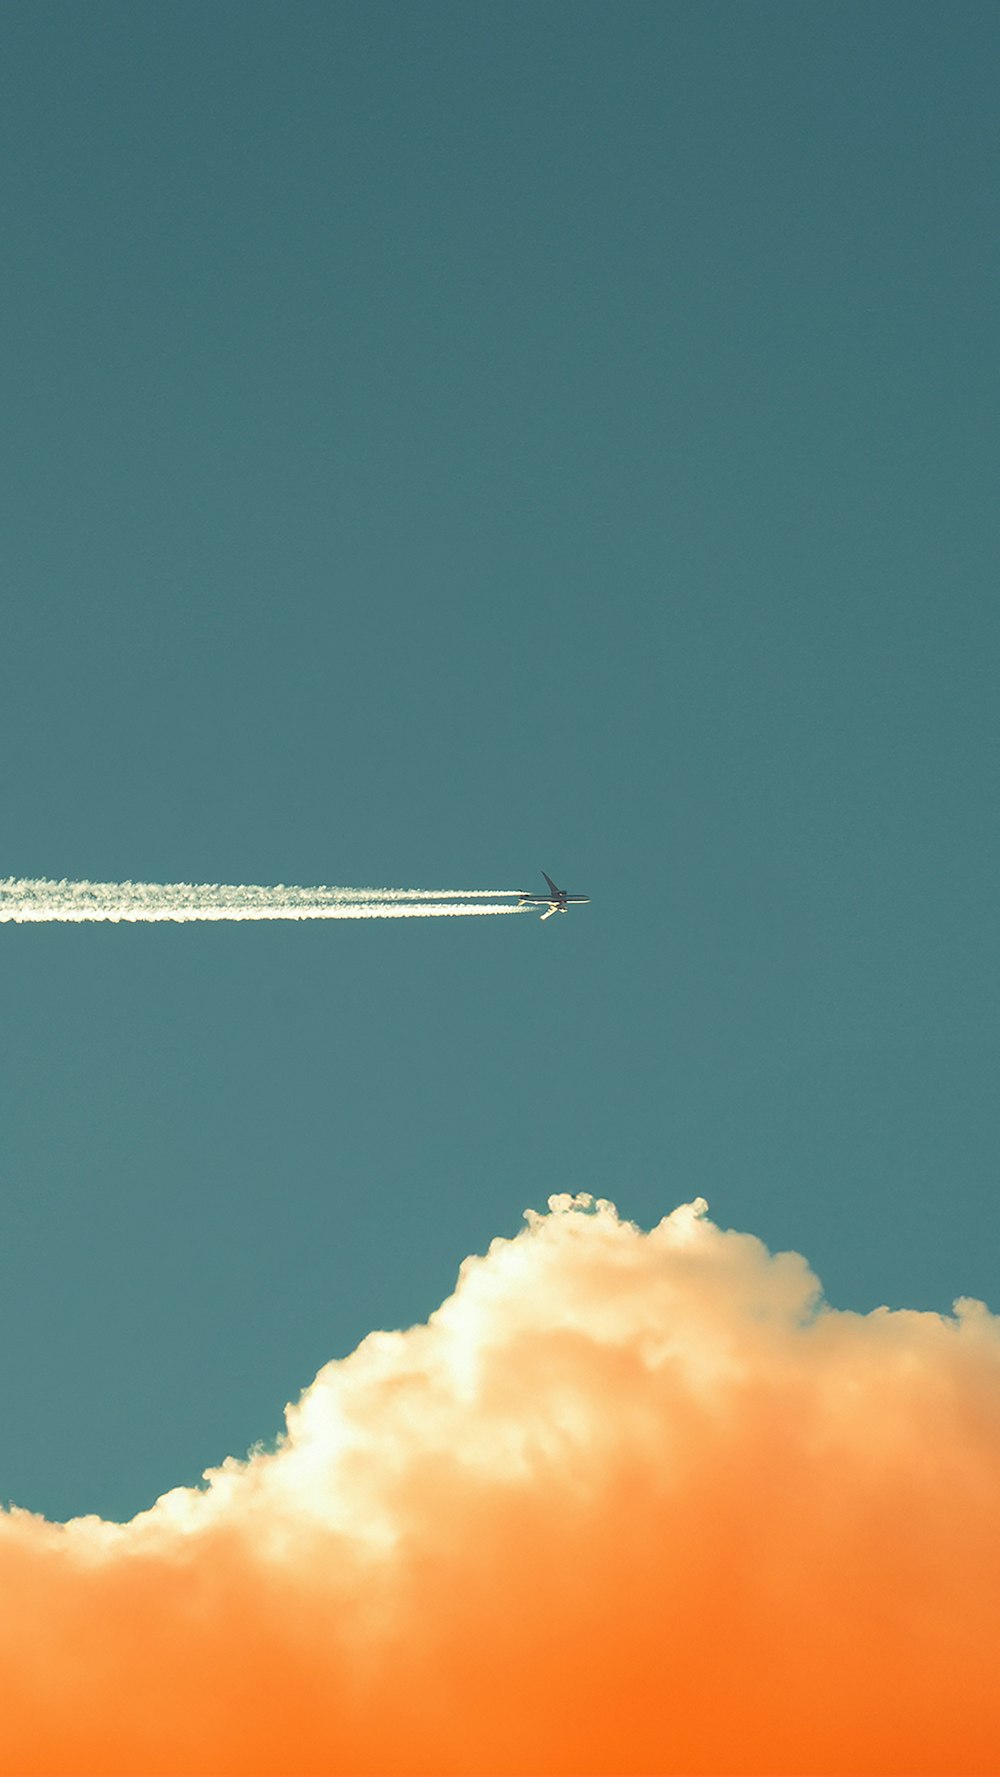 Um avião está voando no céu com um rastro de fumaça atrás dele